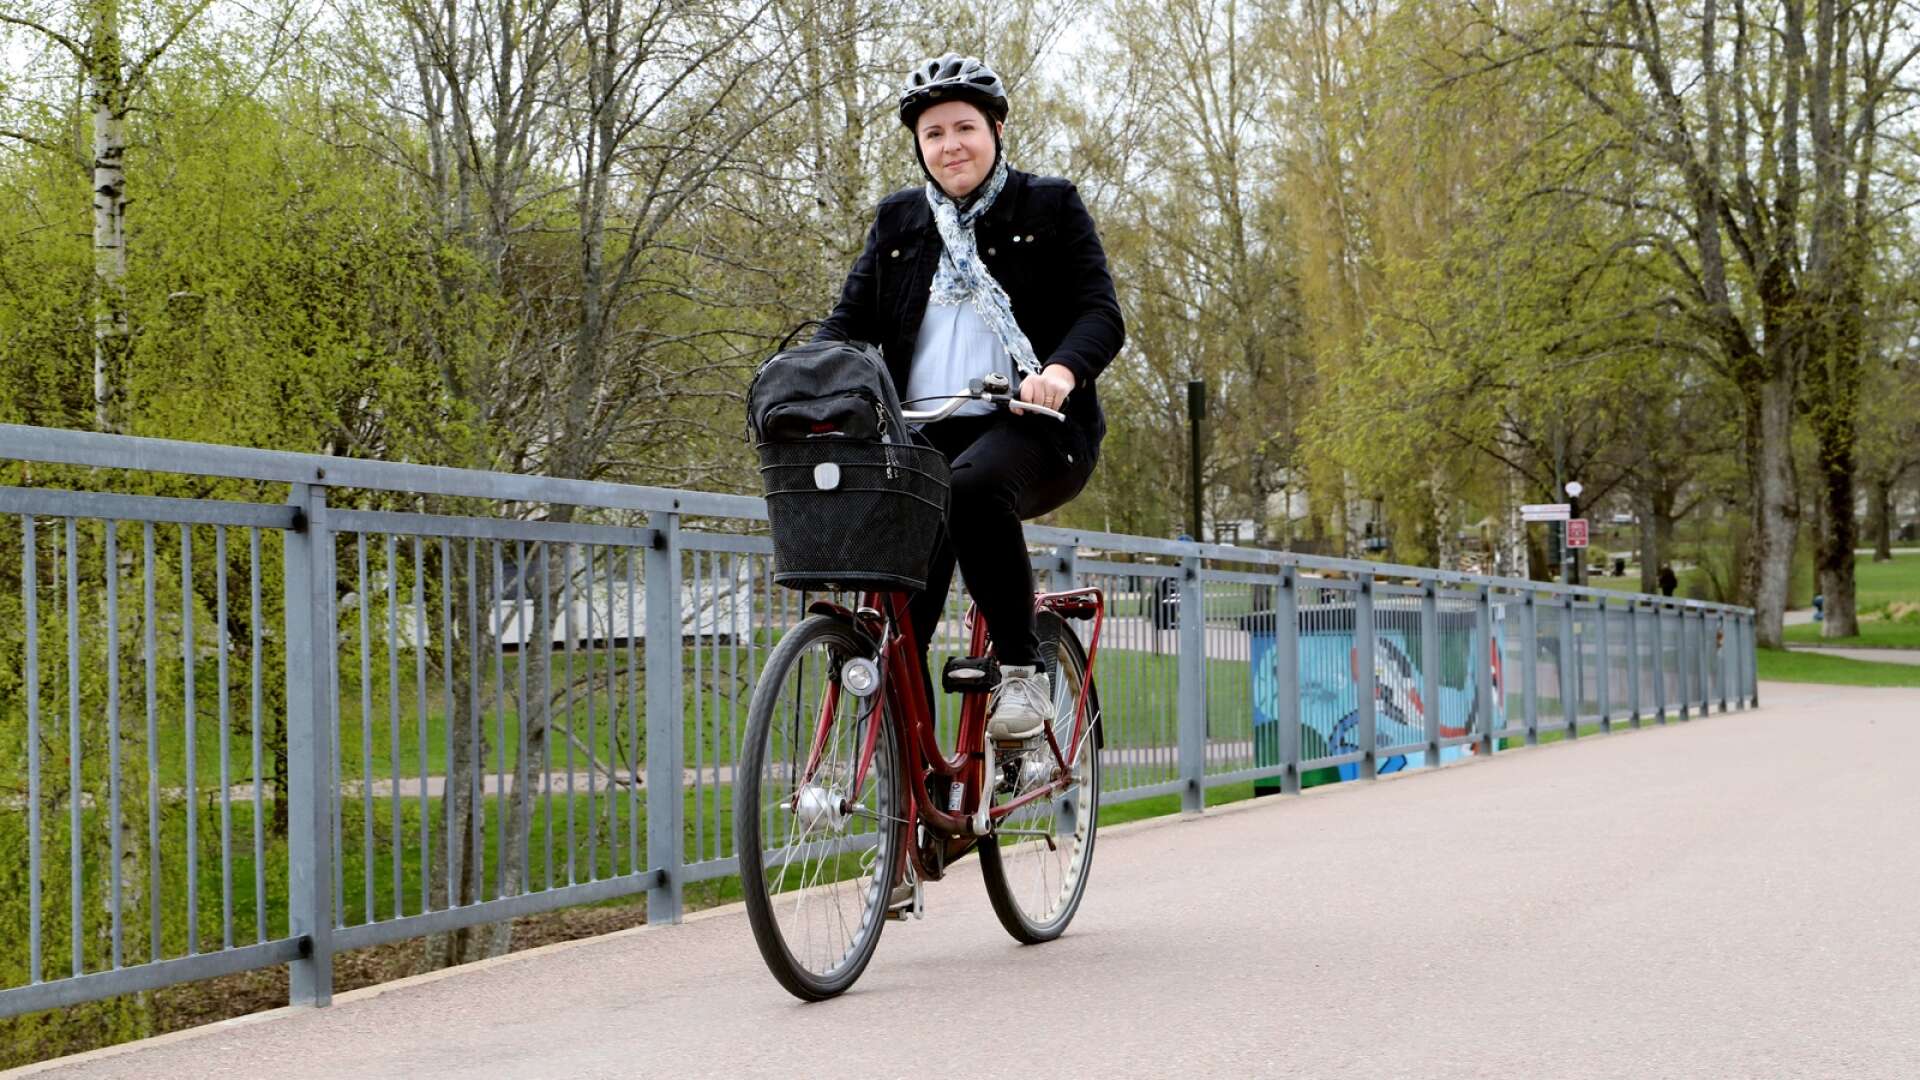 Karlstadsbon Malin Edgren debuterar som barnboksförfattare med boken om Joni, som tänker slå rekord i fortcykling. Själv nöjer hon sig med spinning och med cykeln som transportmedel i stan.